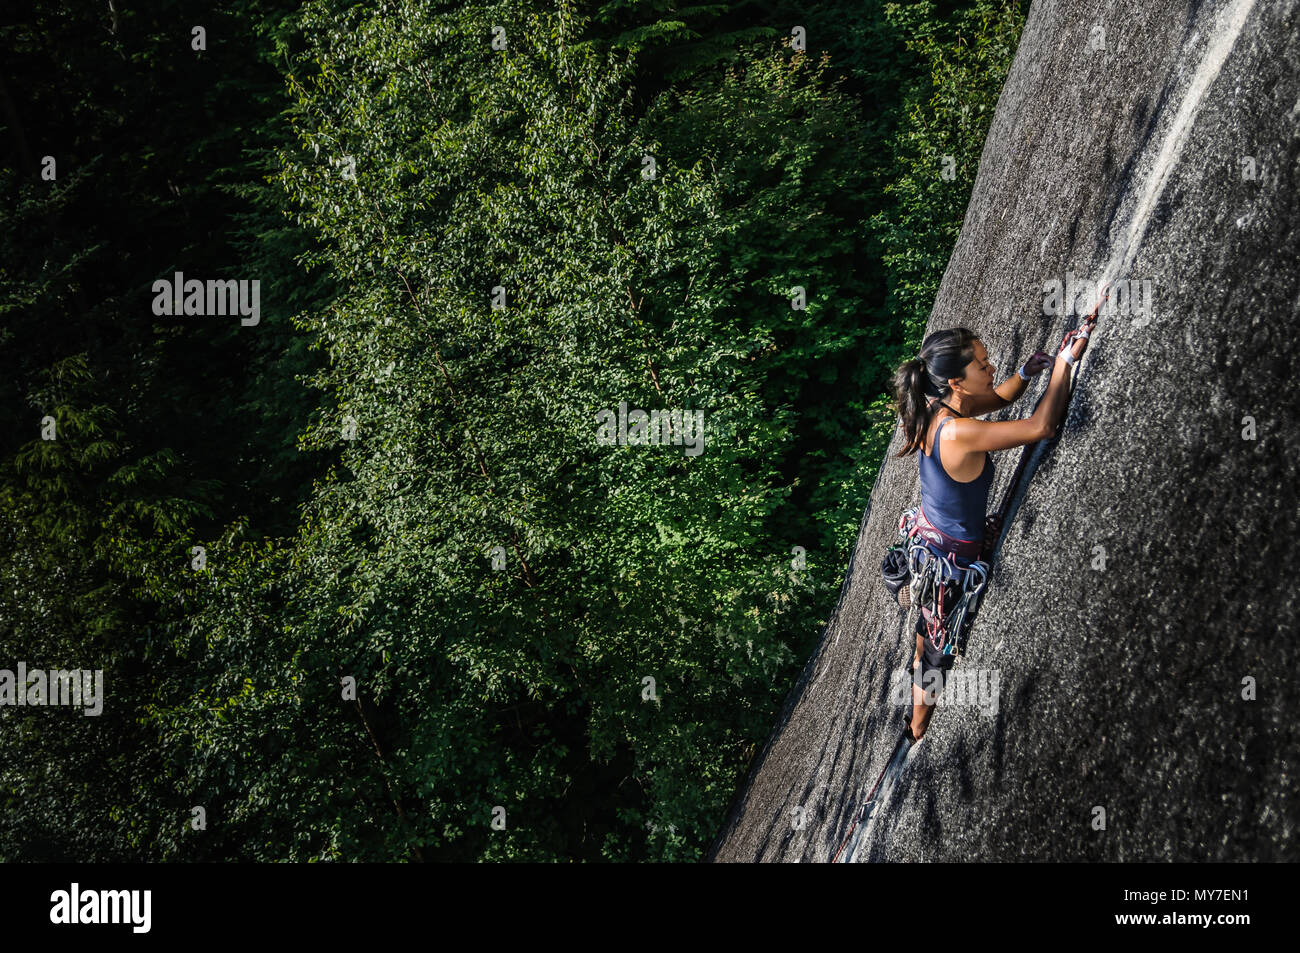 Hembra escalador, escalada de roca de granito (el Jefe), niveles elevados de vista, Squamish, Canadá Foto de stock